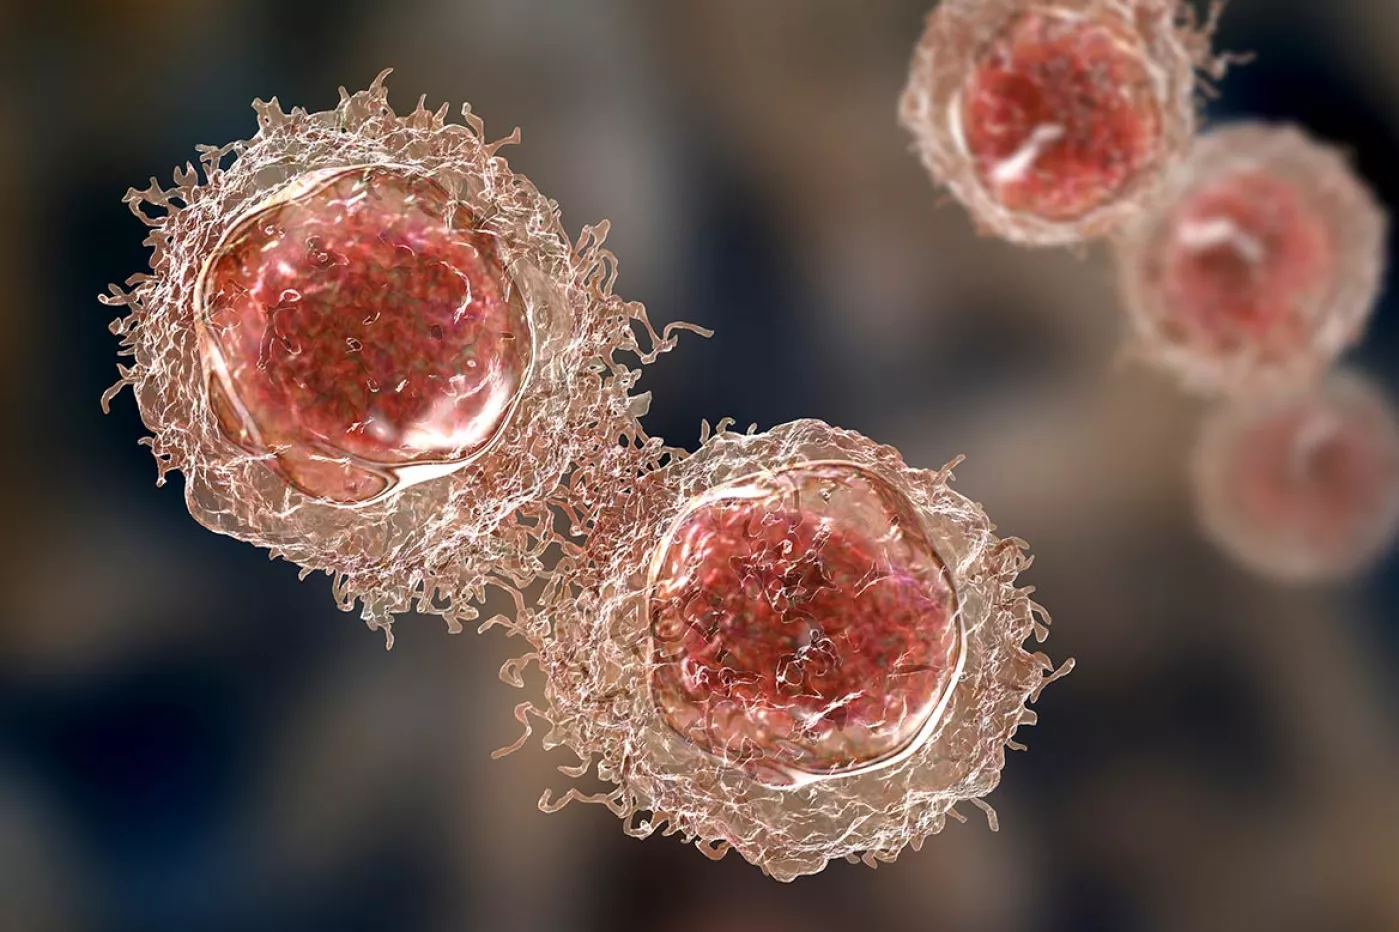 allá de la piel', un nuevo documental para dar visibilidad a los pacientes con linfomas de células T | DiarioMedico